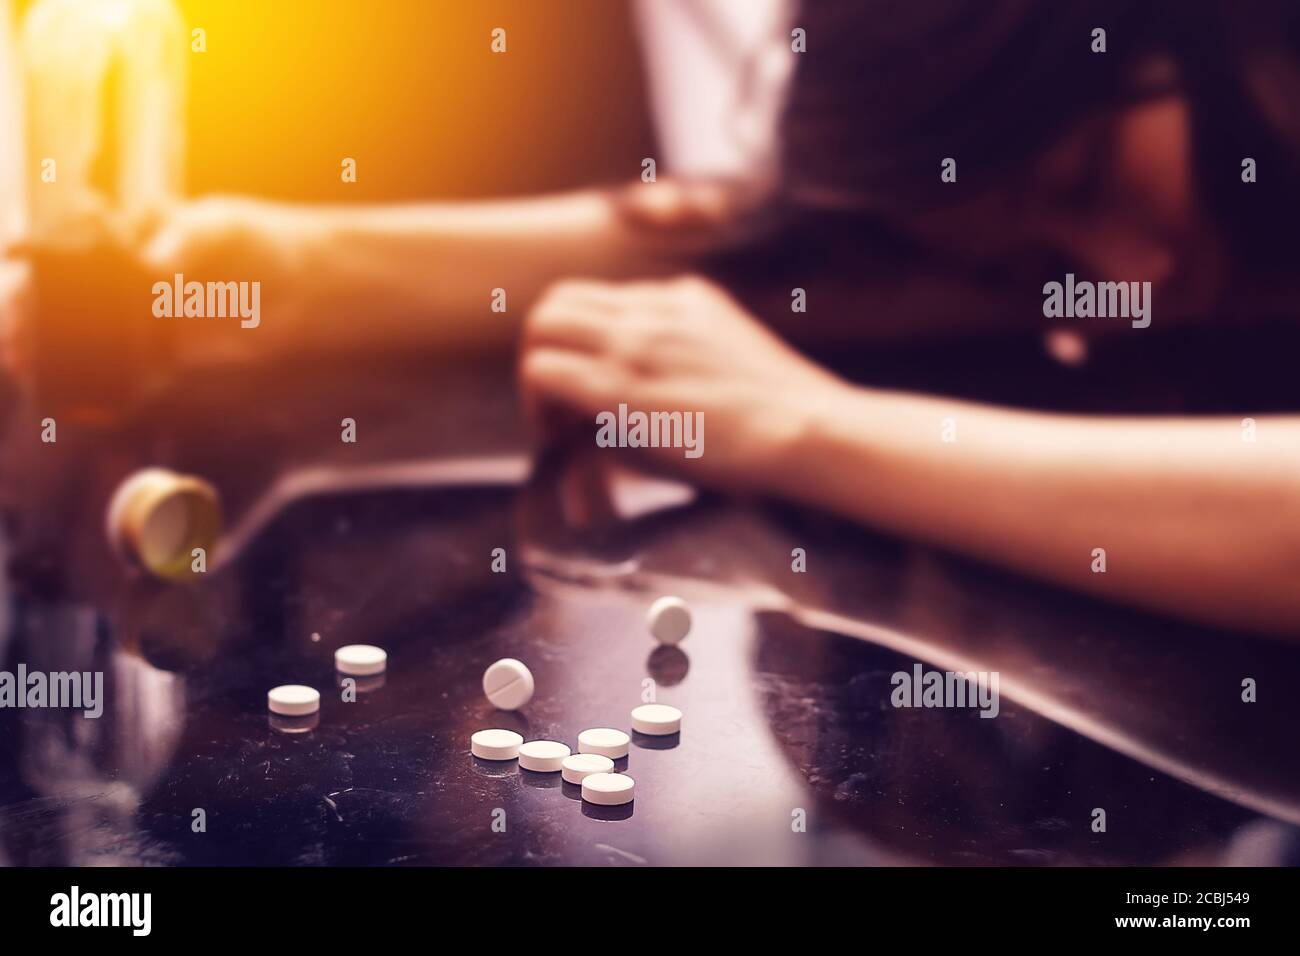 surdosage , problème de toxicomanie concept : plusieurs pillules déversées sur la table près d'une bouteille d'alcool. Banque D'Images